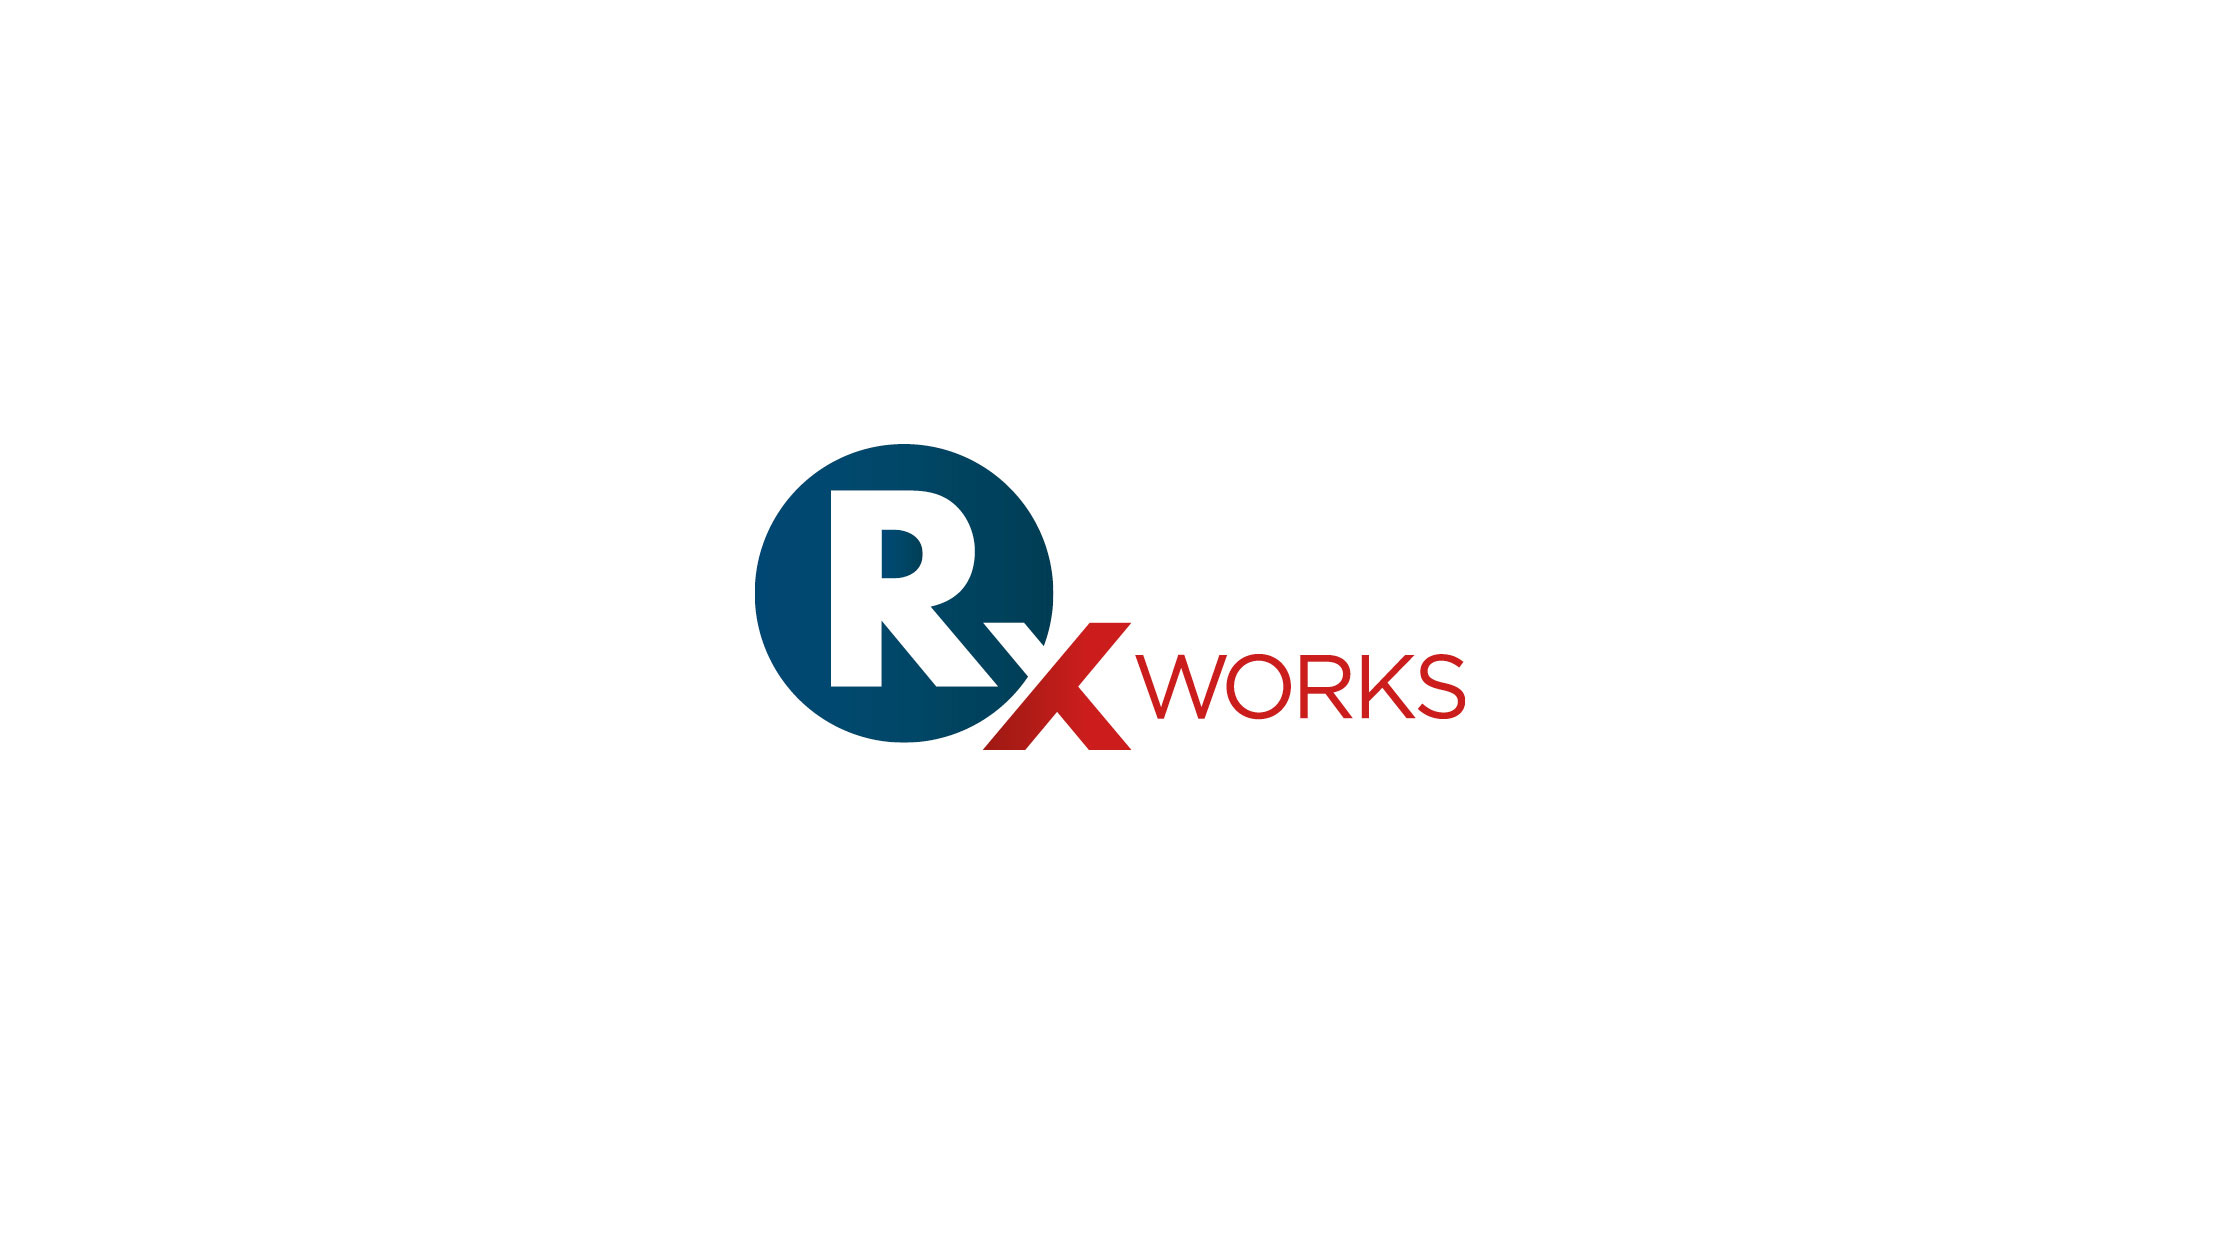 RX Works logo design